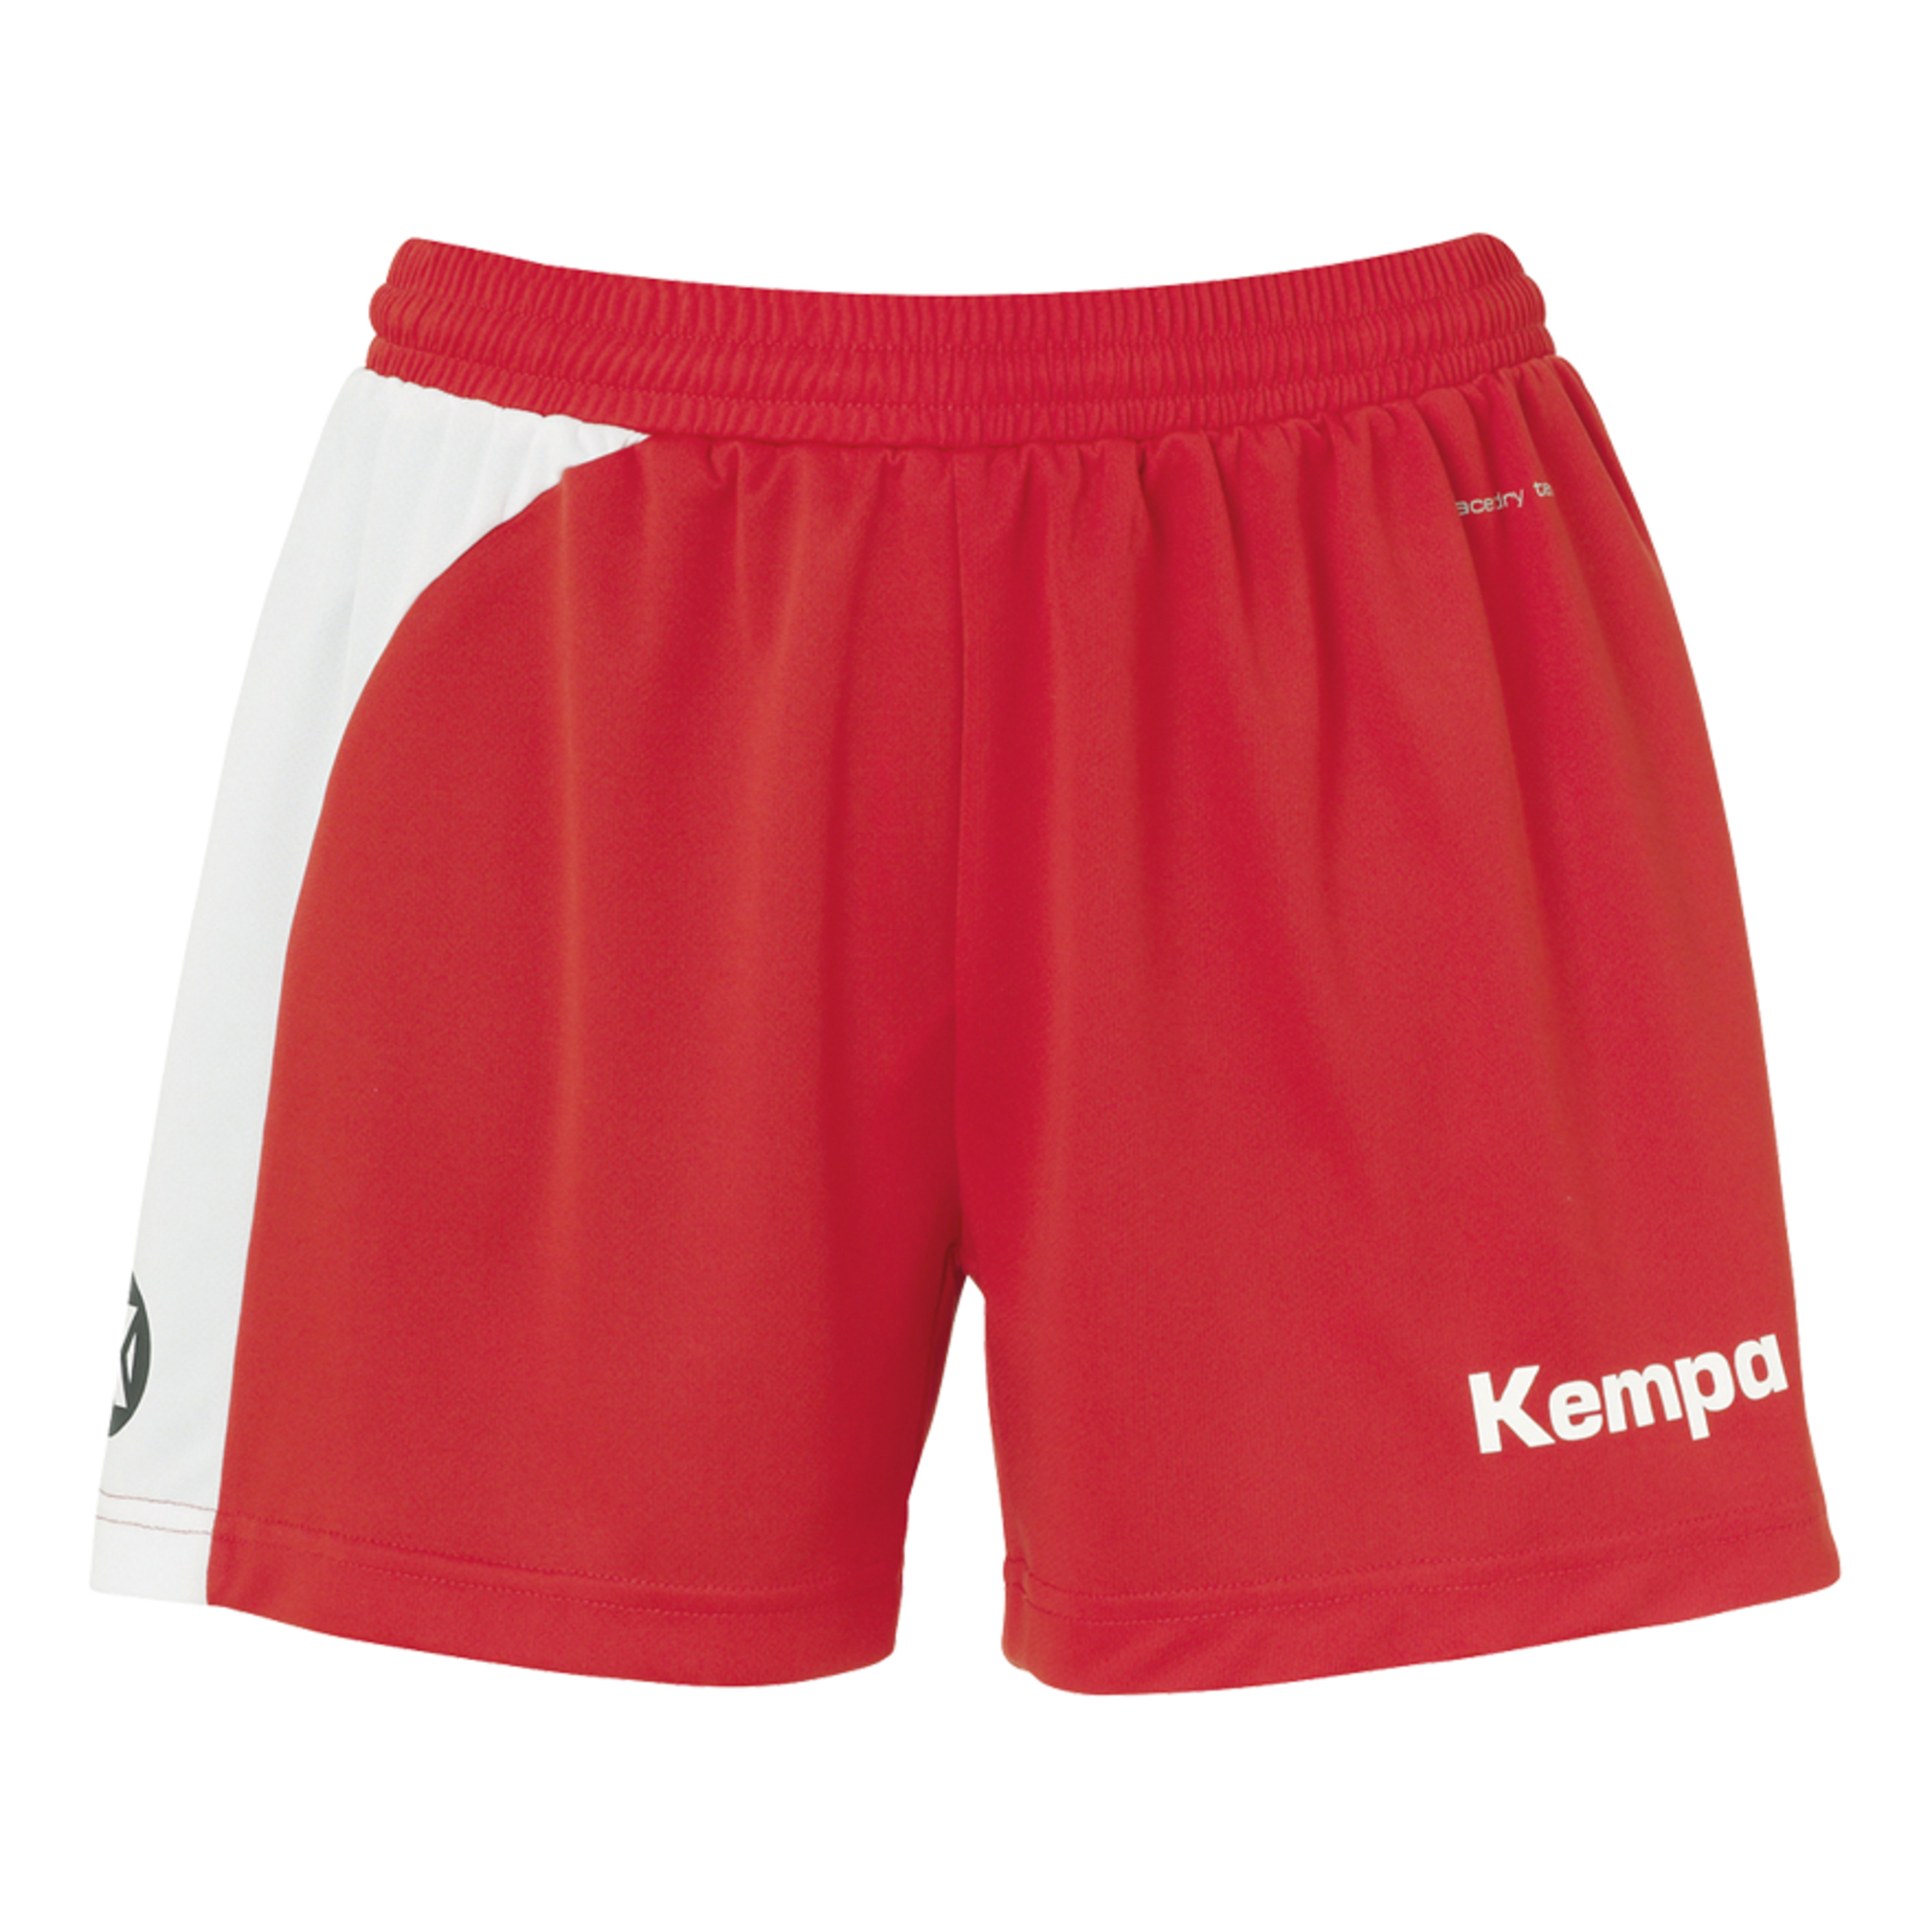 Peak Shorts De Mujer Rojo/blanco Kempa